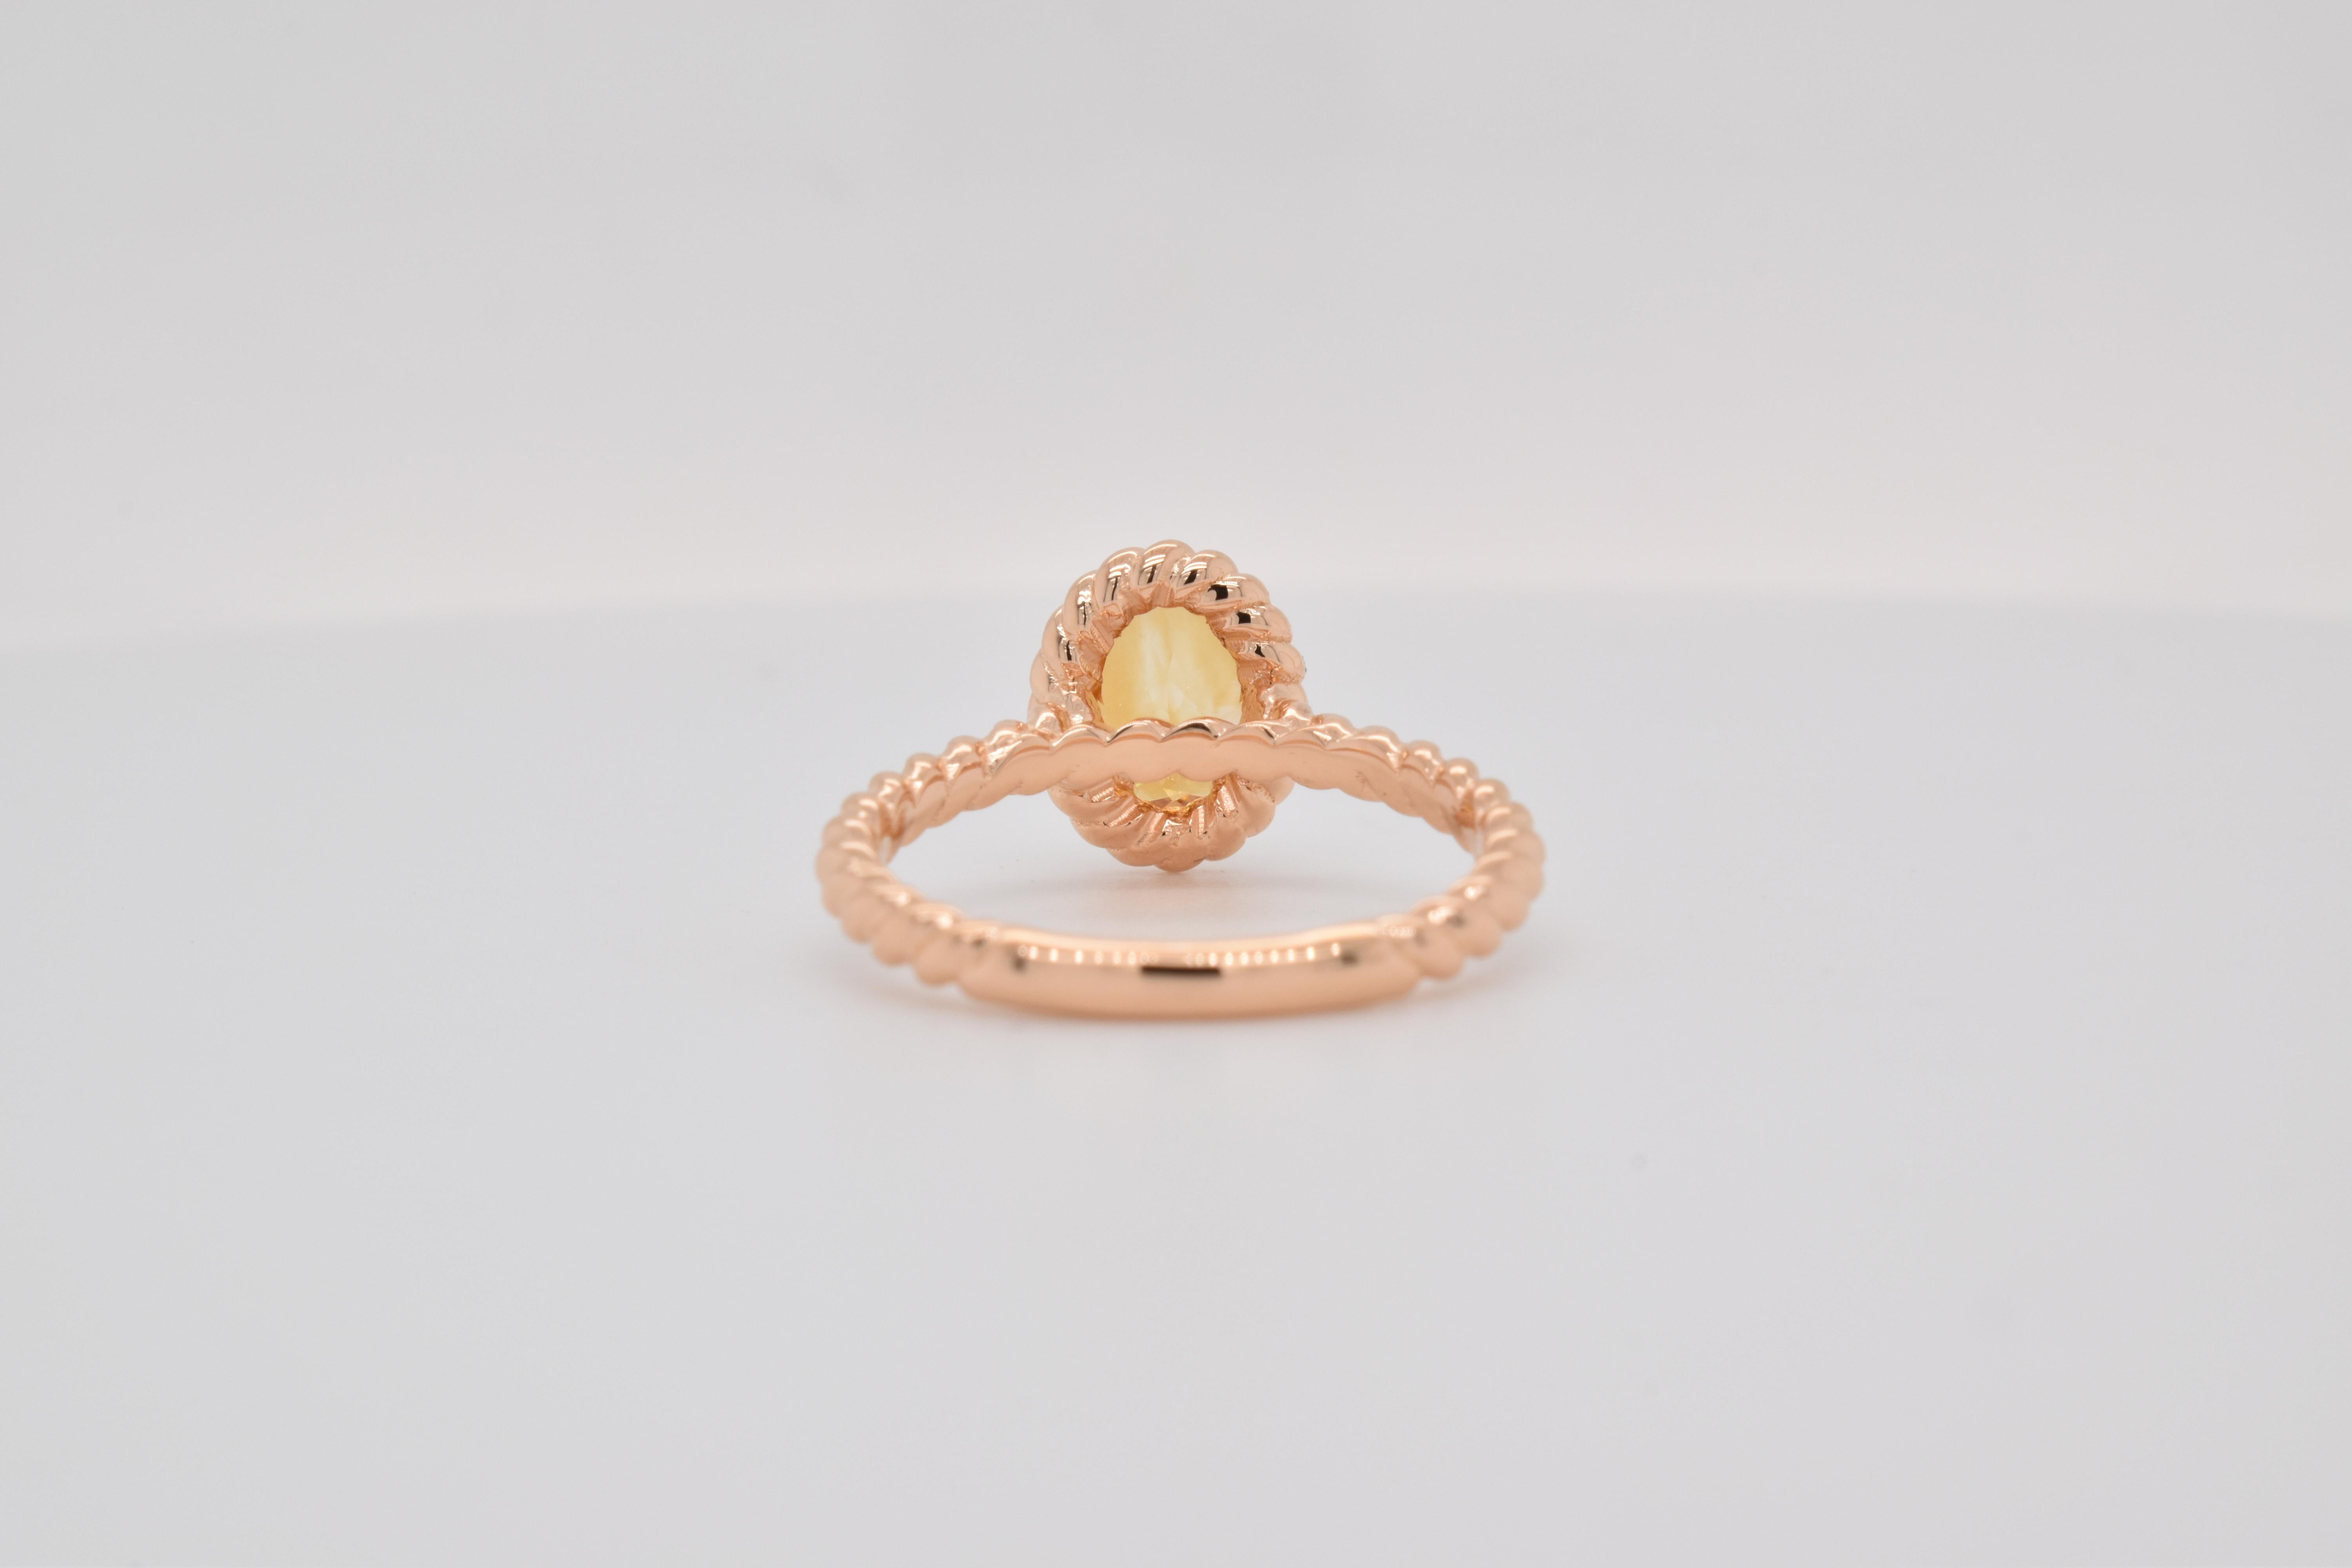 Ovale Form Citrin Edelstein  handwerklich schön gemacht  in einem Ring. Eine feurige gelbe Farbe November Birthstone. Für einen besonderen Anlass wie Verlobung oder Heiratsantrag oder als Geschenk für einen besonderen Menschen.

Größe des